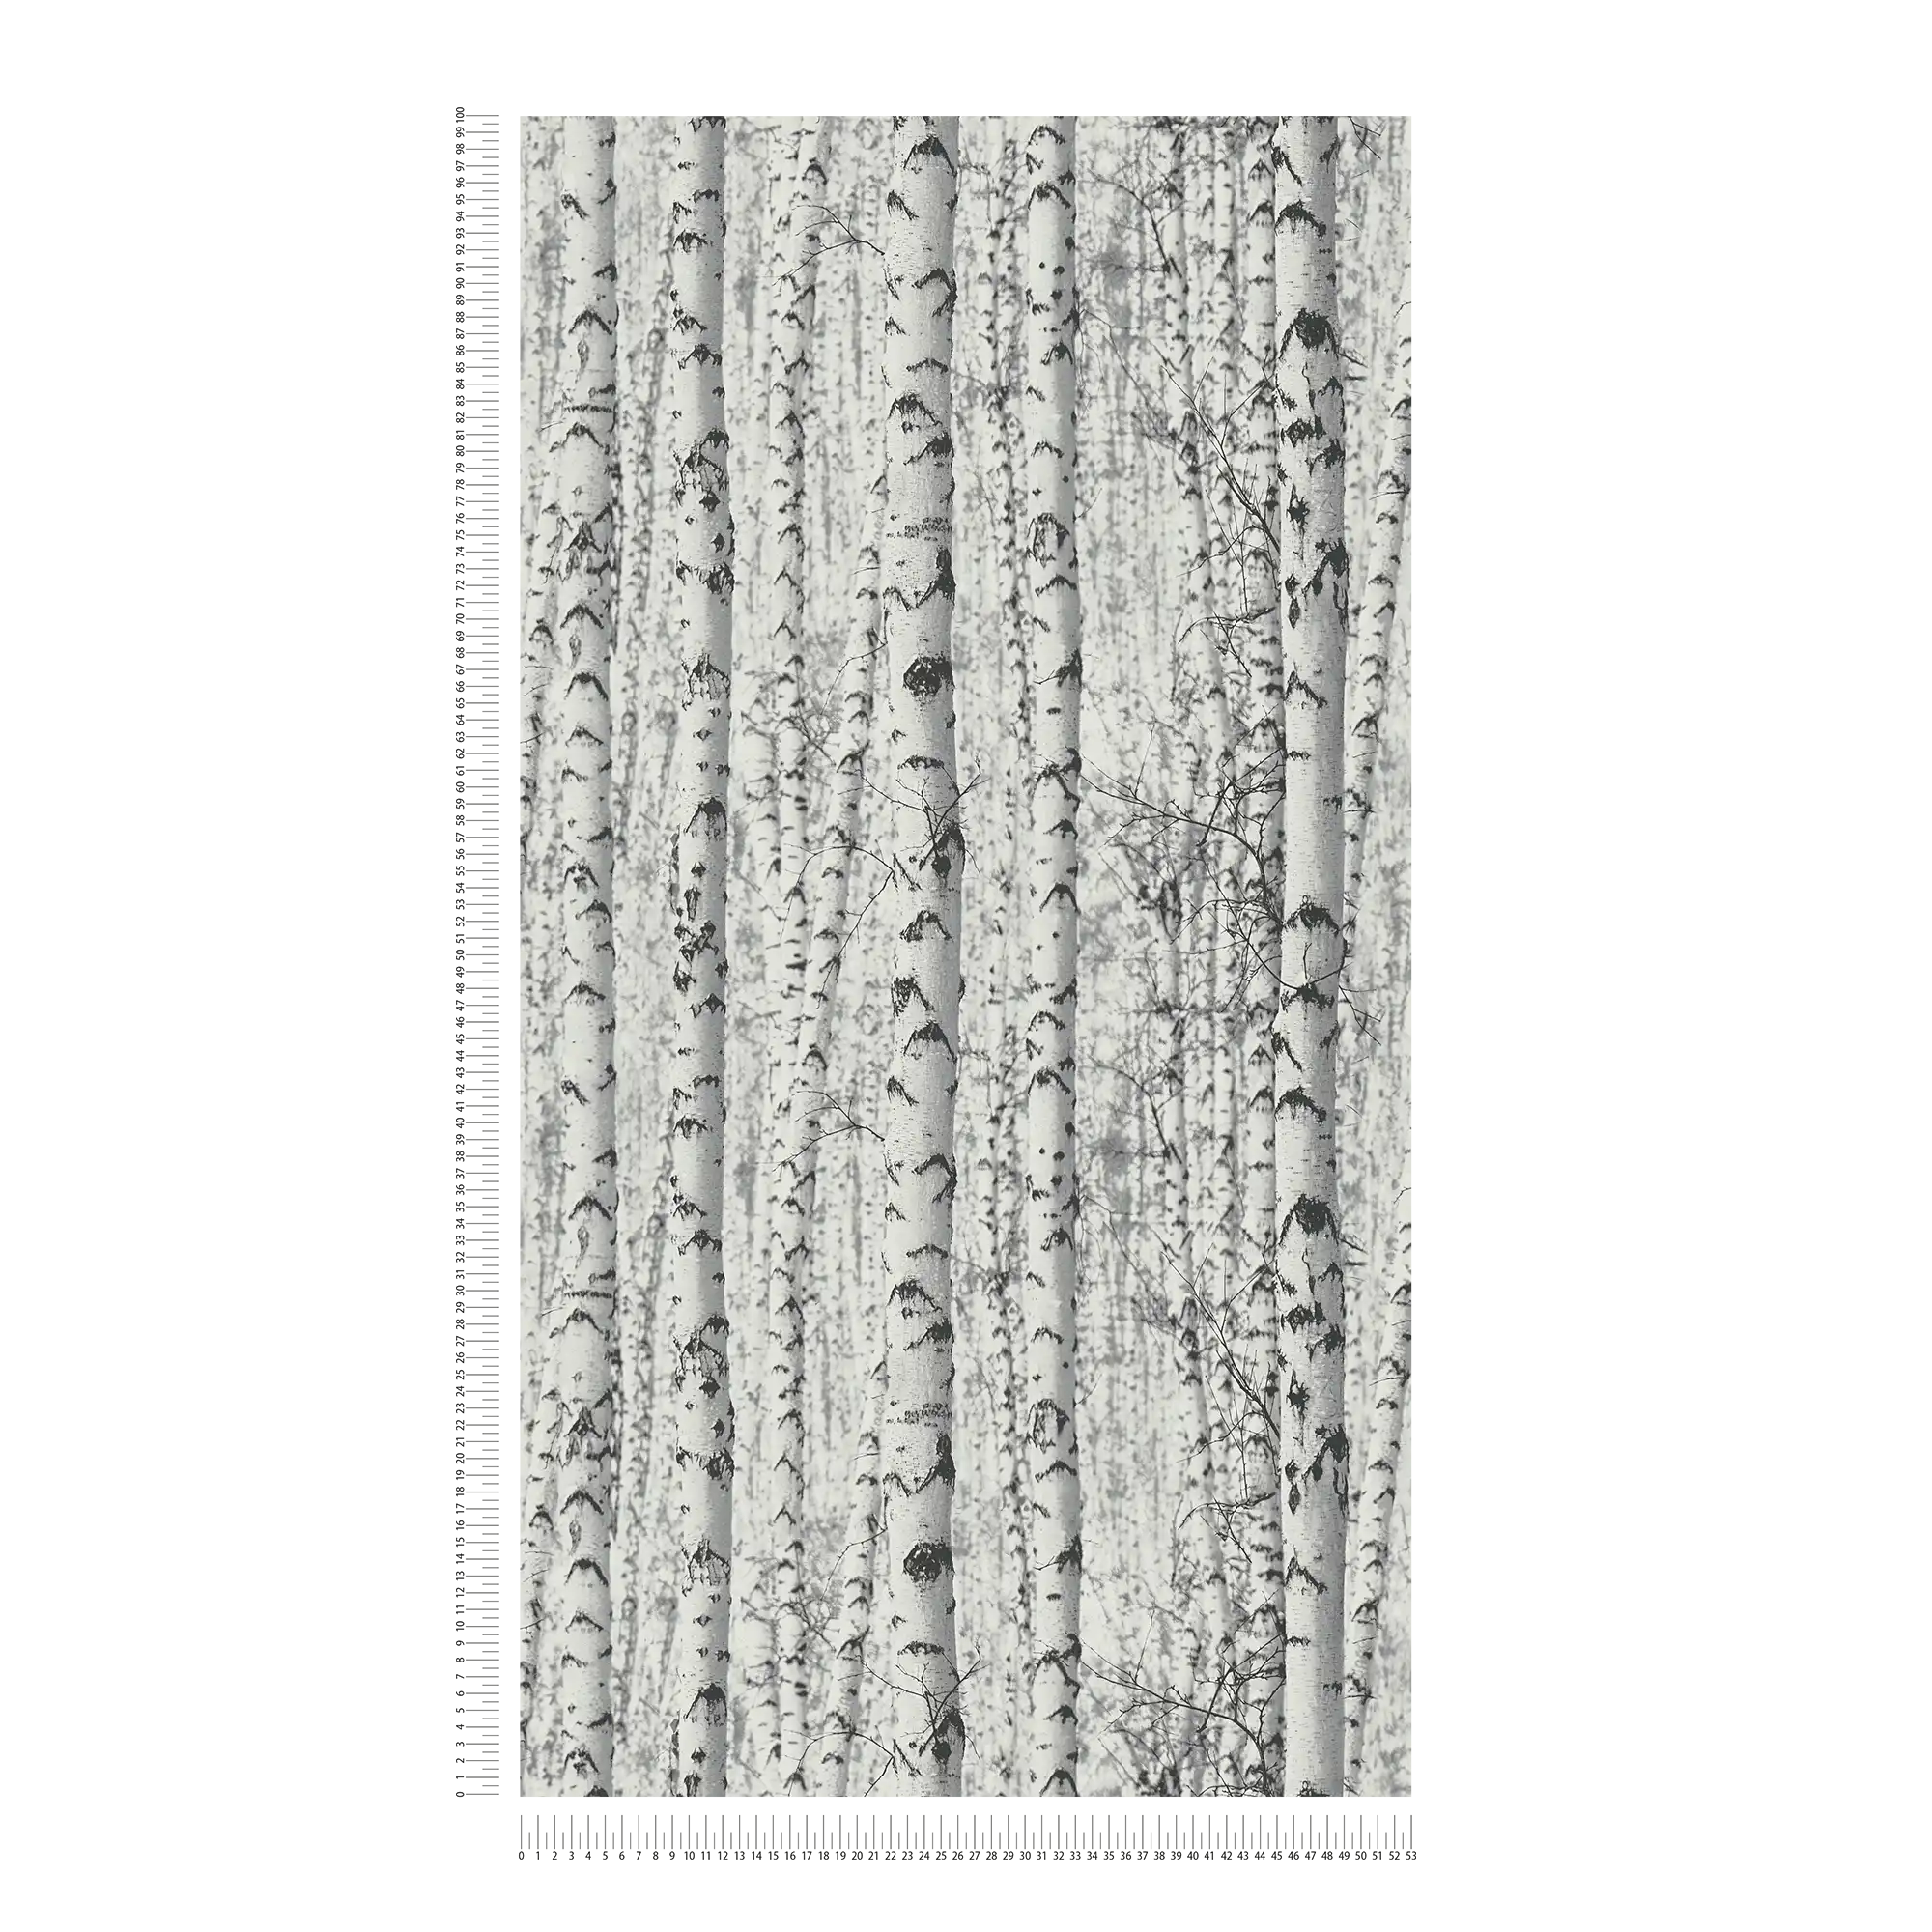             Zwart-wit behang berkenbos 3D - wit, zwart
        